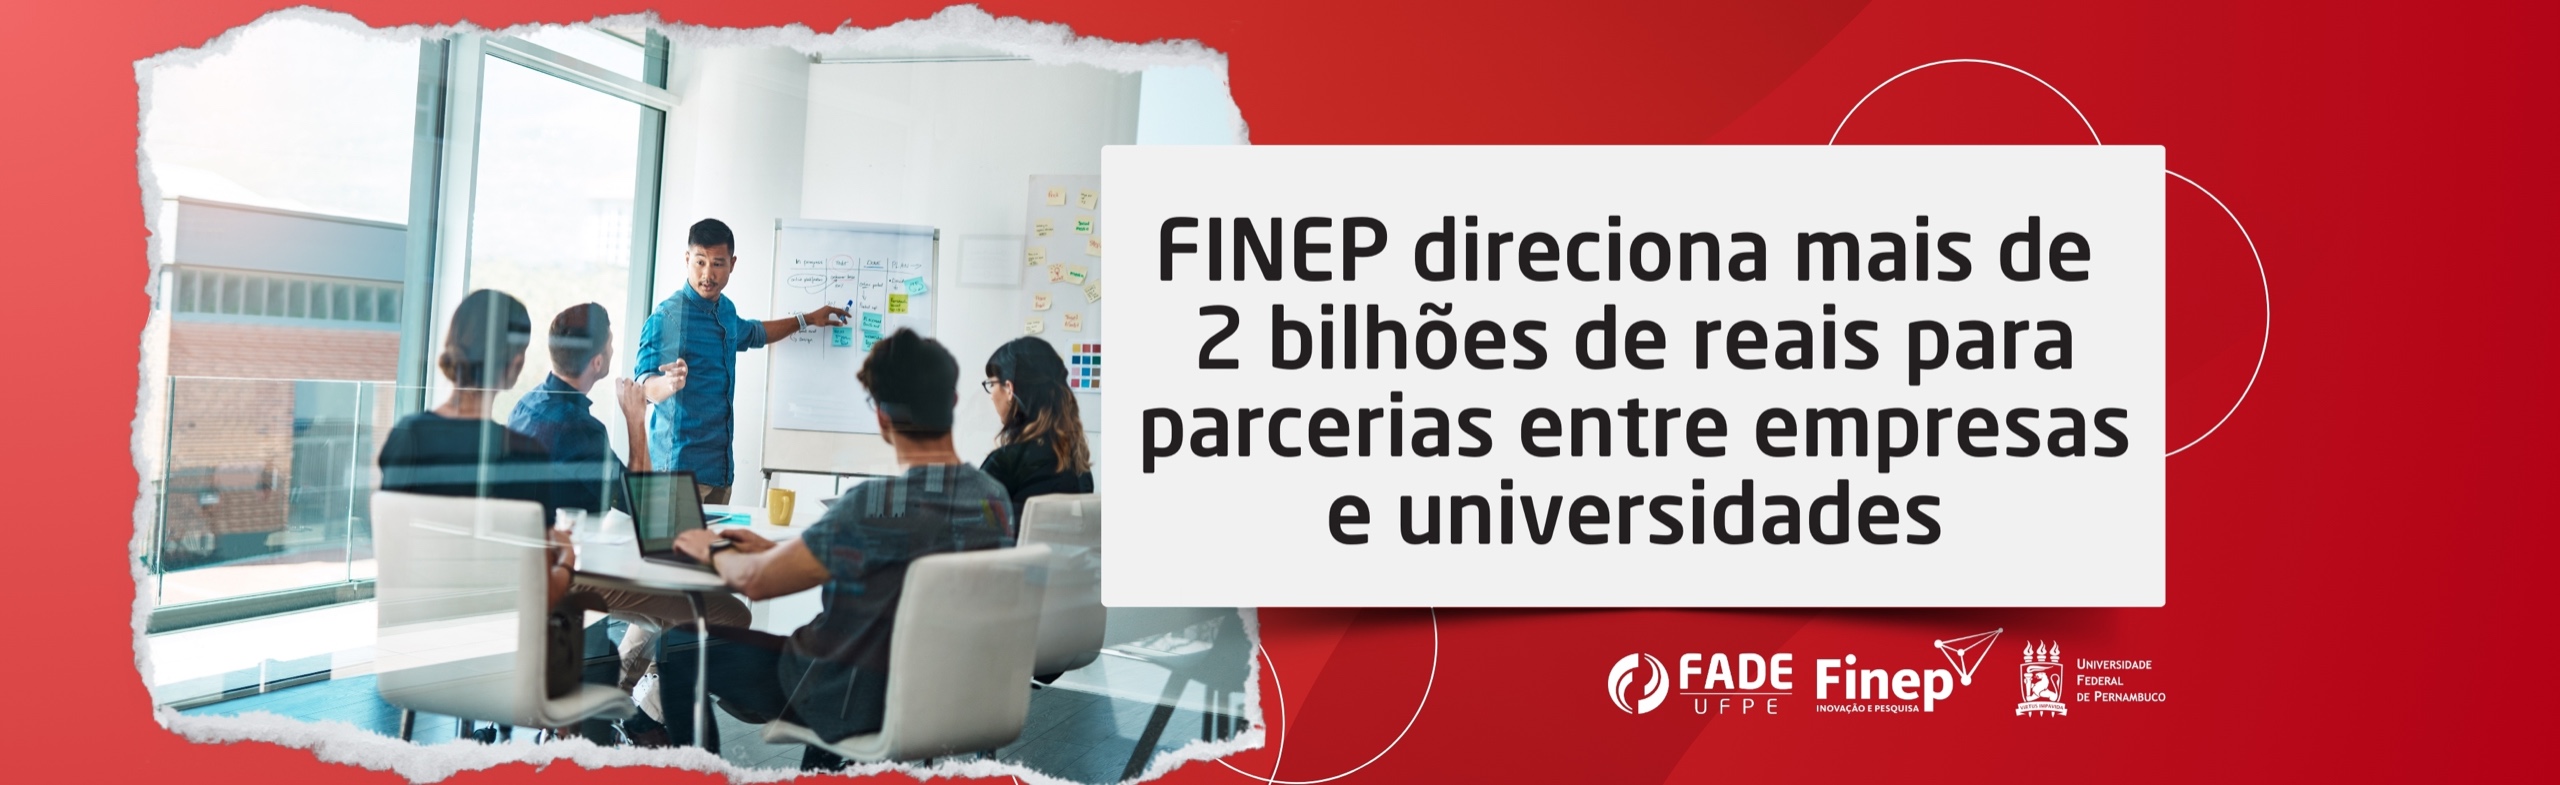 Finep direciona mais de 2 bilhões de reais para parcerias entre empresas e universidades